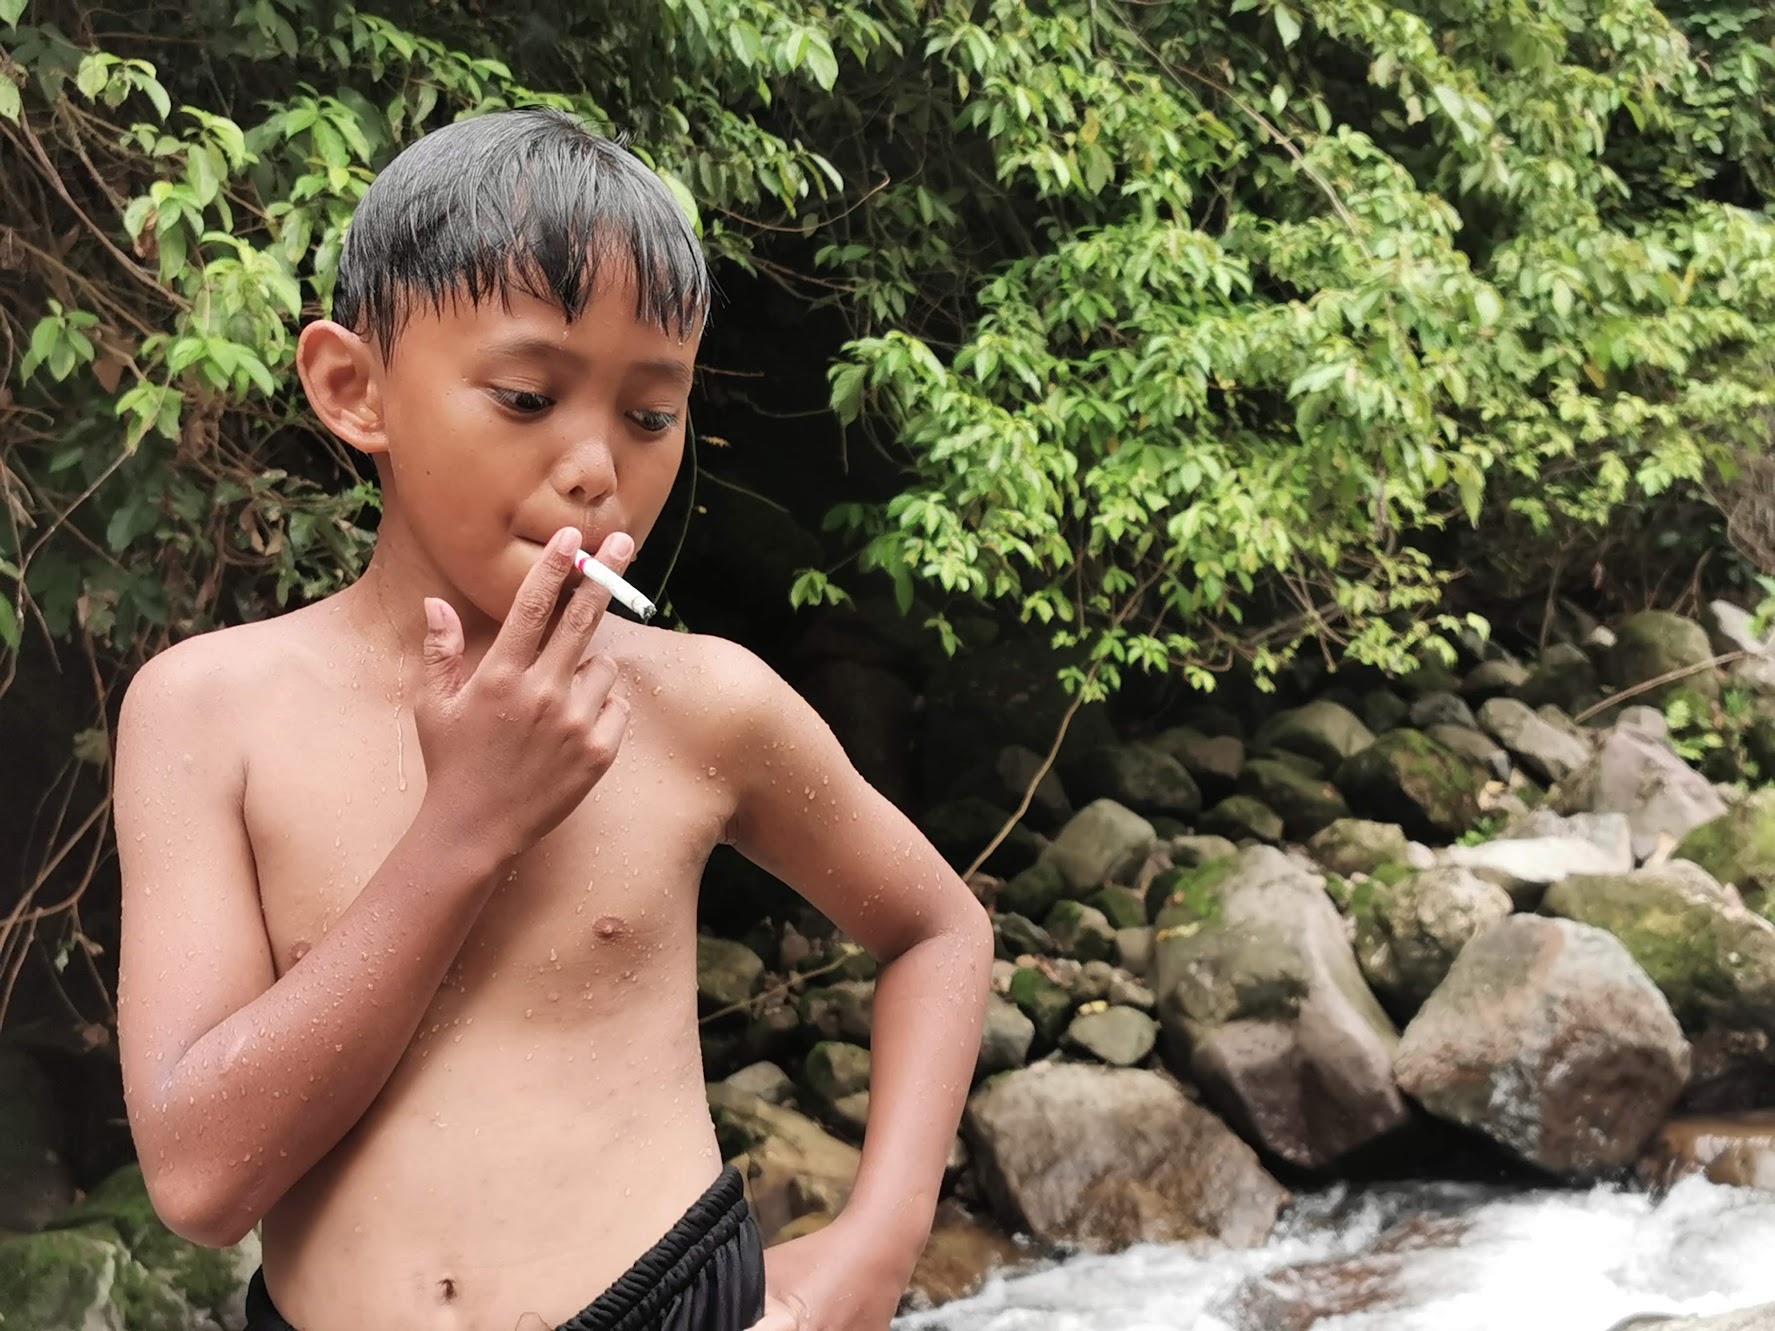 インドネシアでタバコを吸う子供